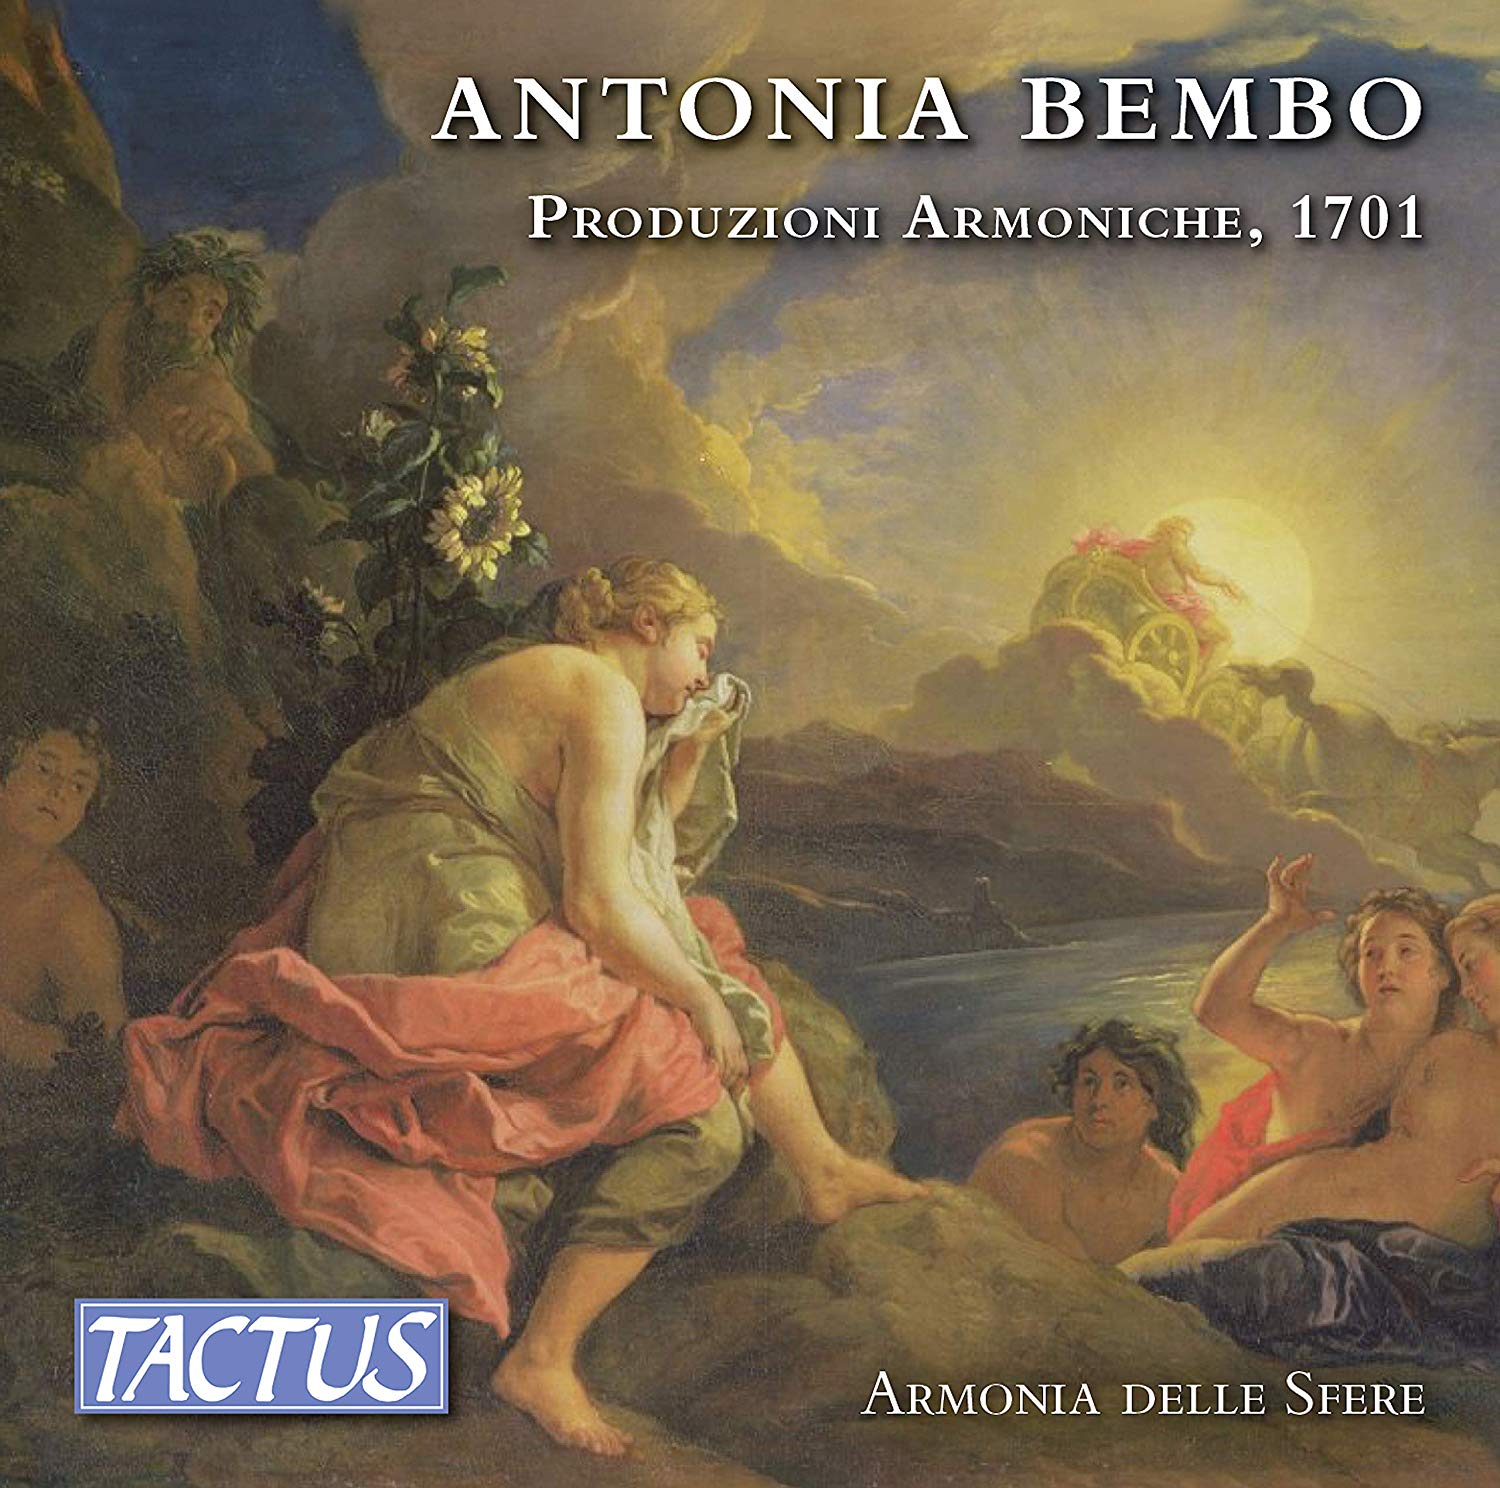 Audio Cd Antonia Bembo - Produzioni Armoniche, 1701 (3 Cd) NUOVO SIGILLATO, EDIZIONE DEL 11/10/2019 SUBITO DISPONIBILE